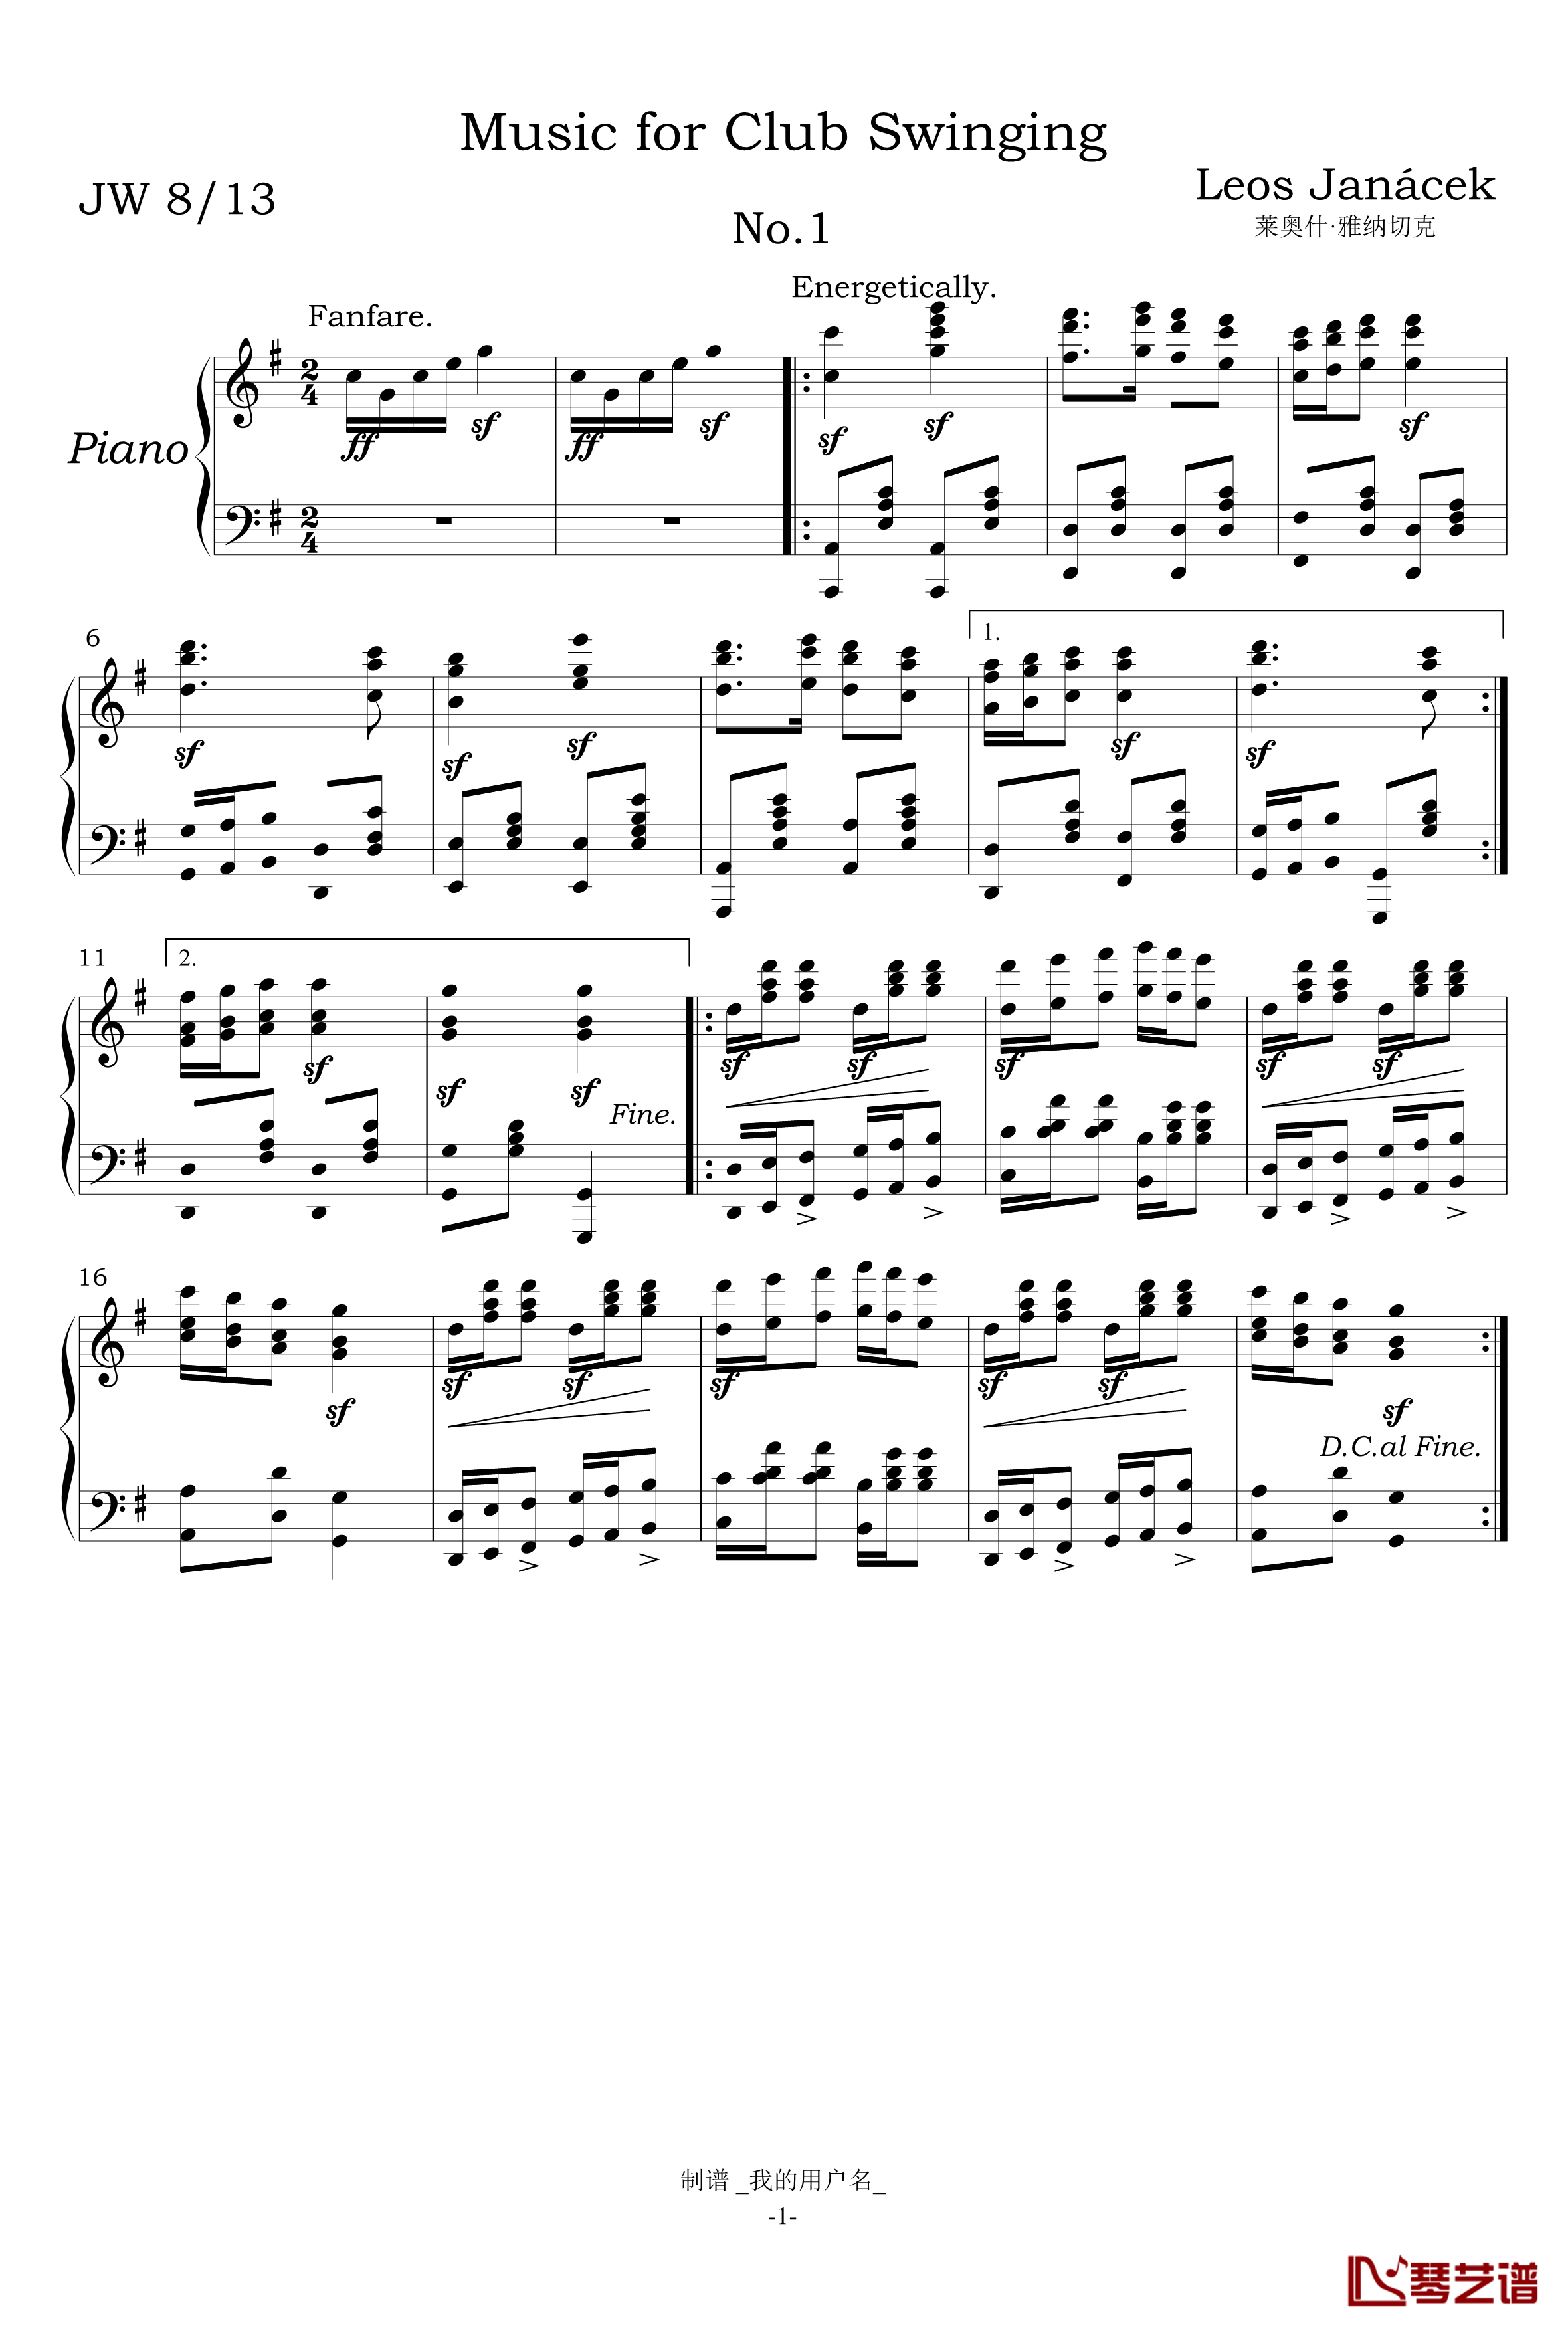 摇摆音乐俱乐部第一首钢琴谱-雅纳切克钢琴小品-雅纳切克1